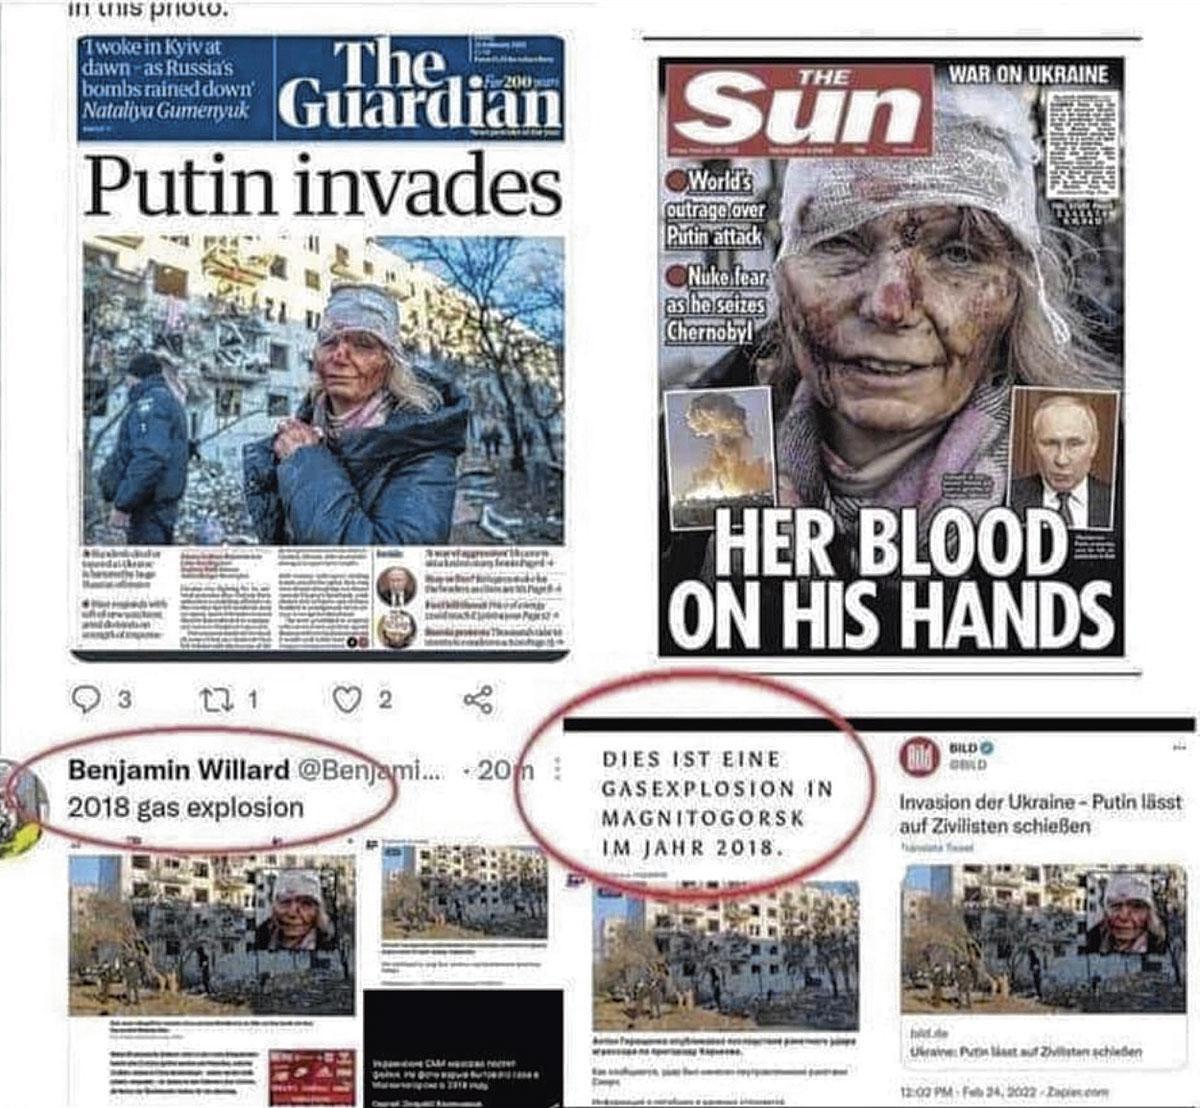 De fausses rumeurs prétendent que les photos de la dame blessée n'ont pas été prises en Ukraine lors de l'invasion, mais en Russie en 2018.